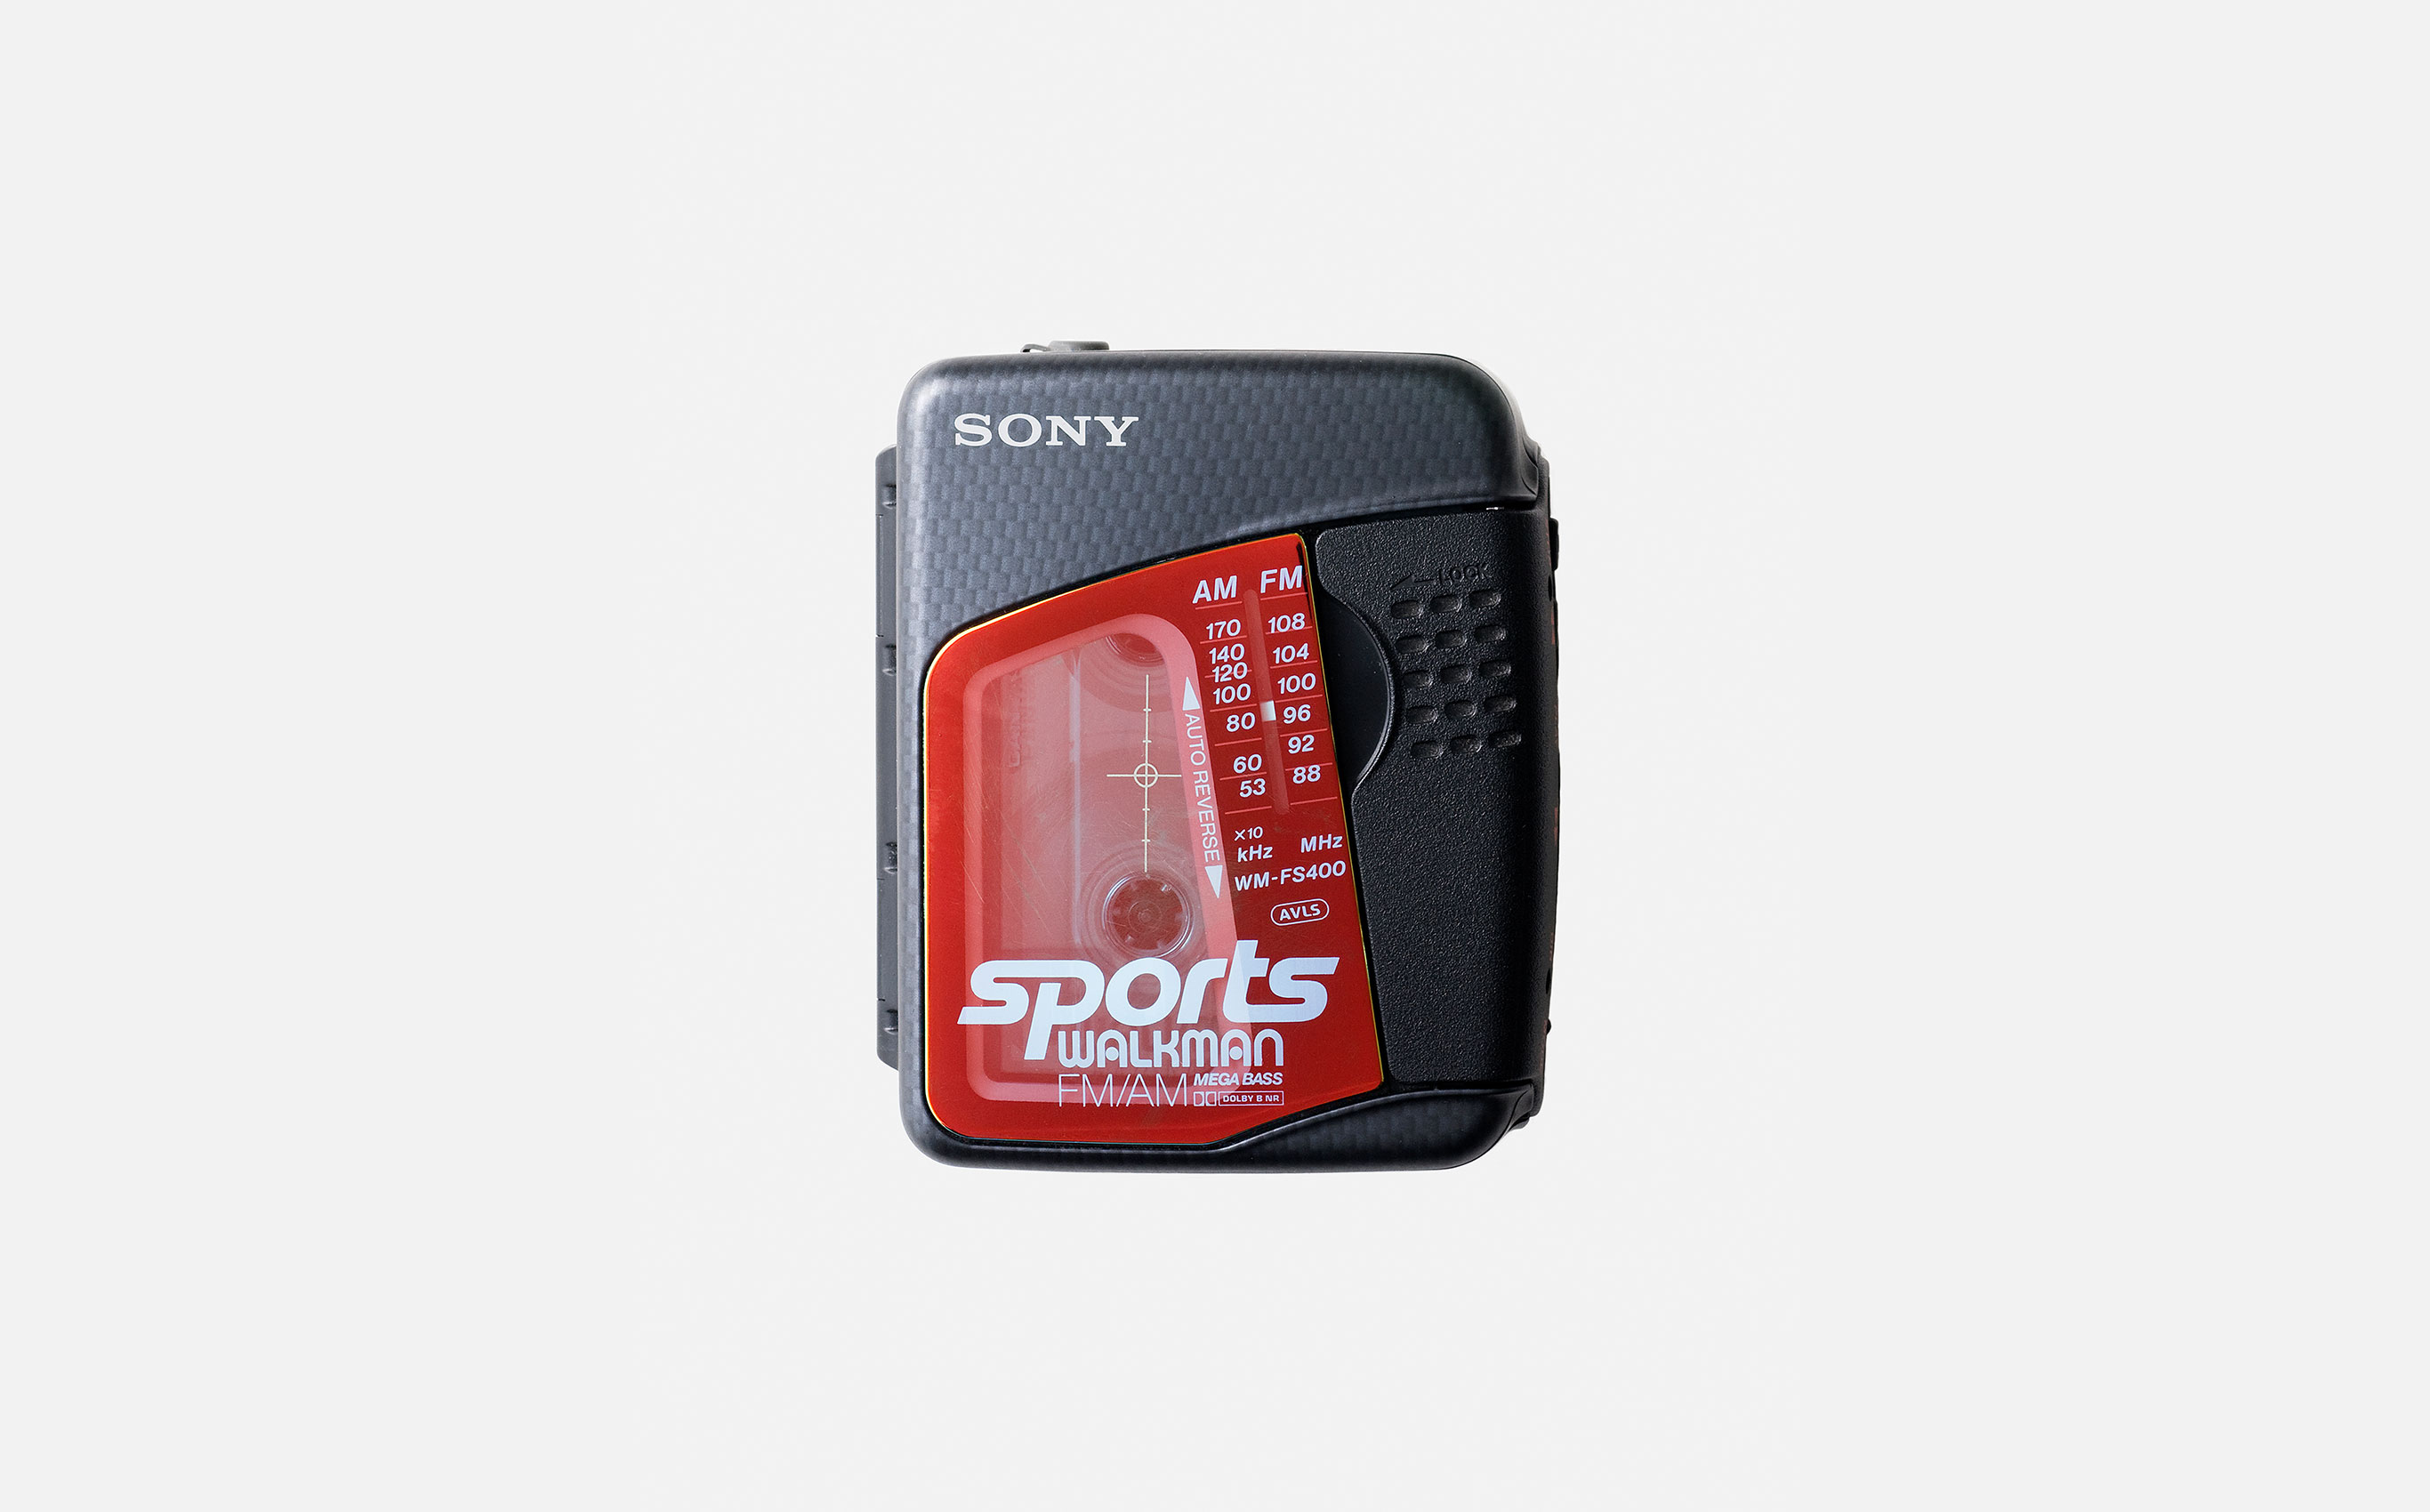 Sports Walkman FS400